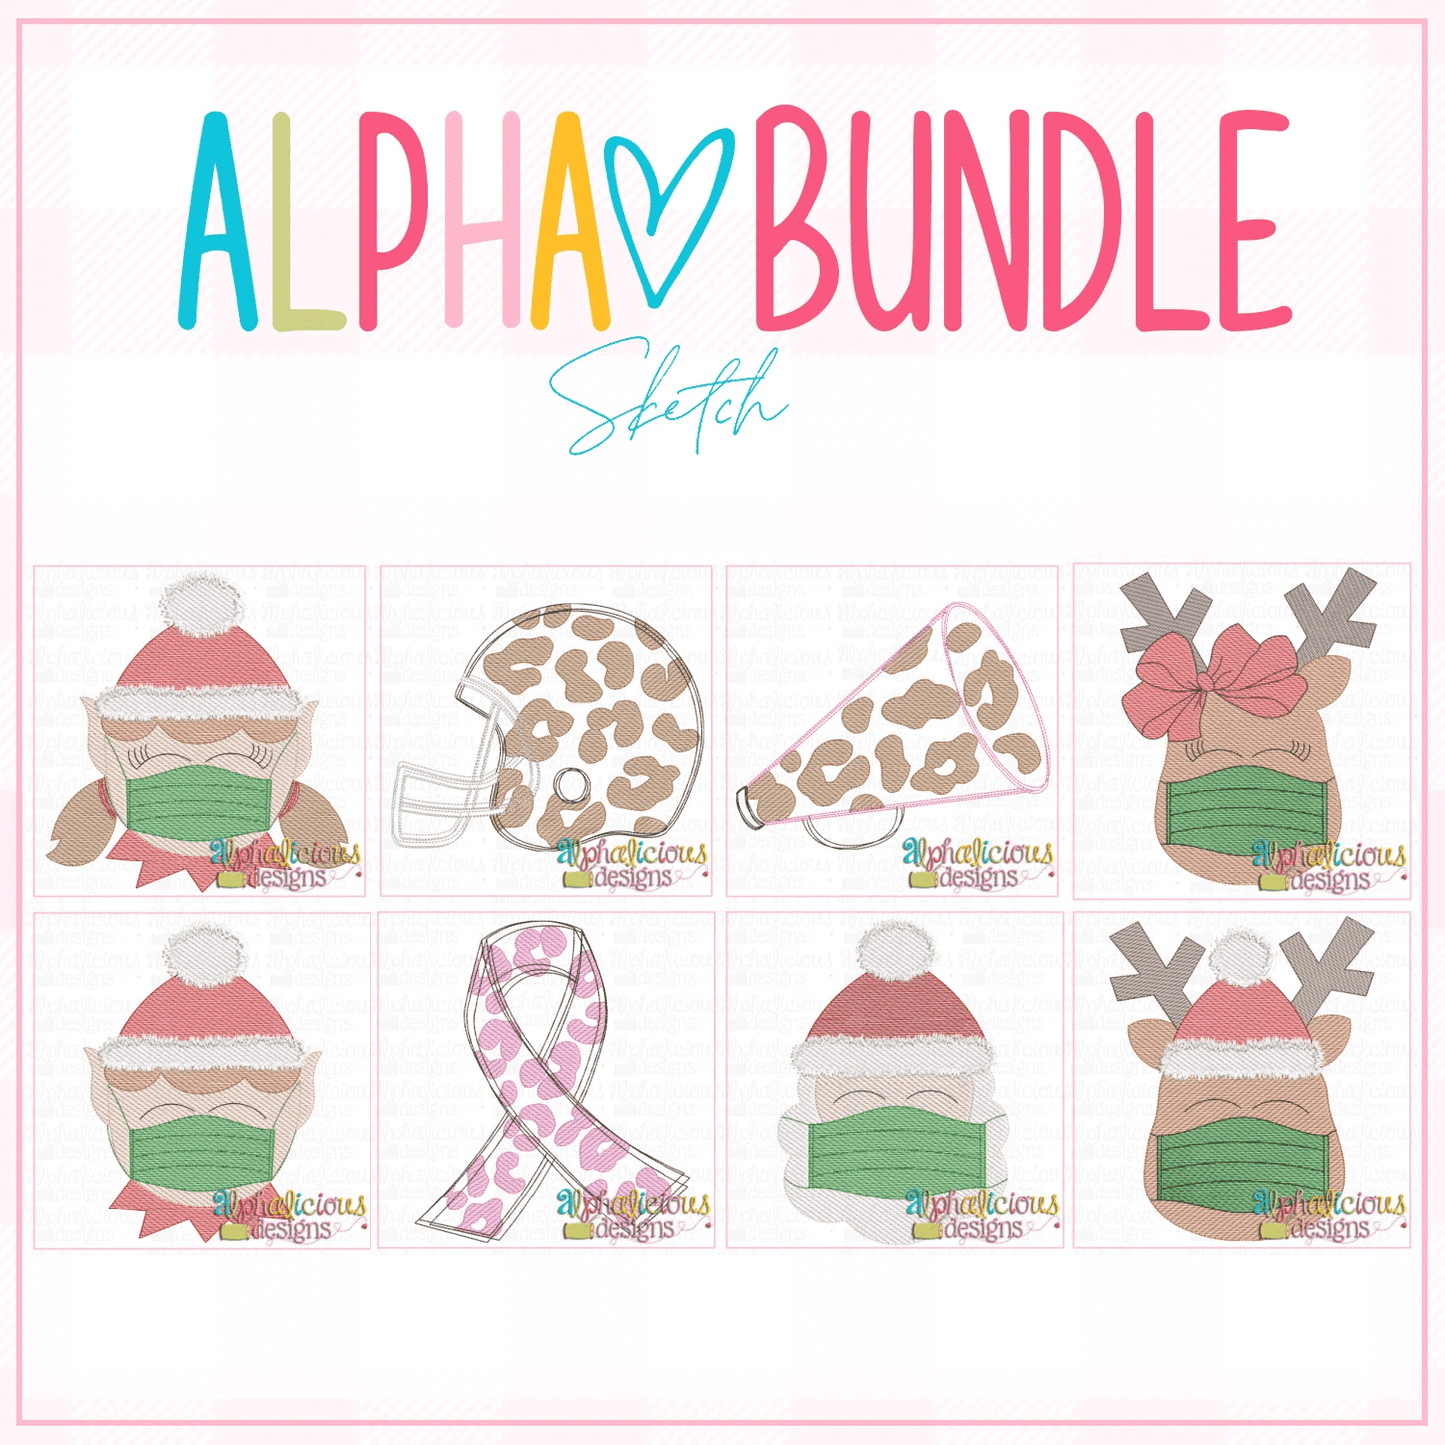 ALPHA BUNDLE-10-16-20 Release-Sketch